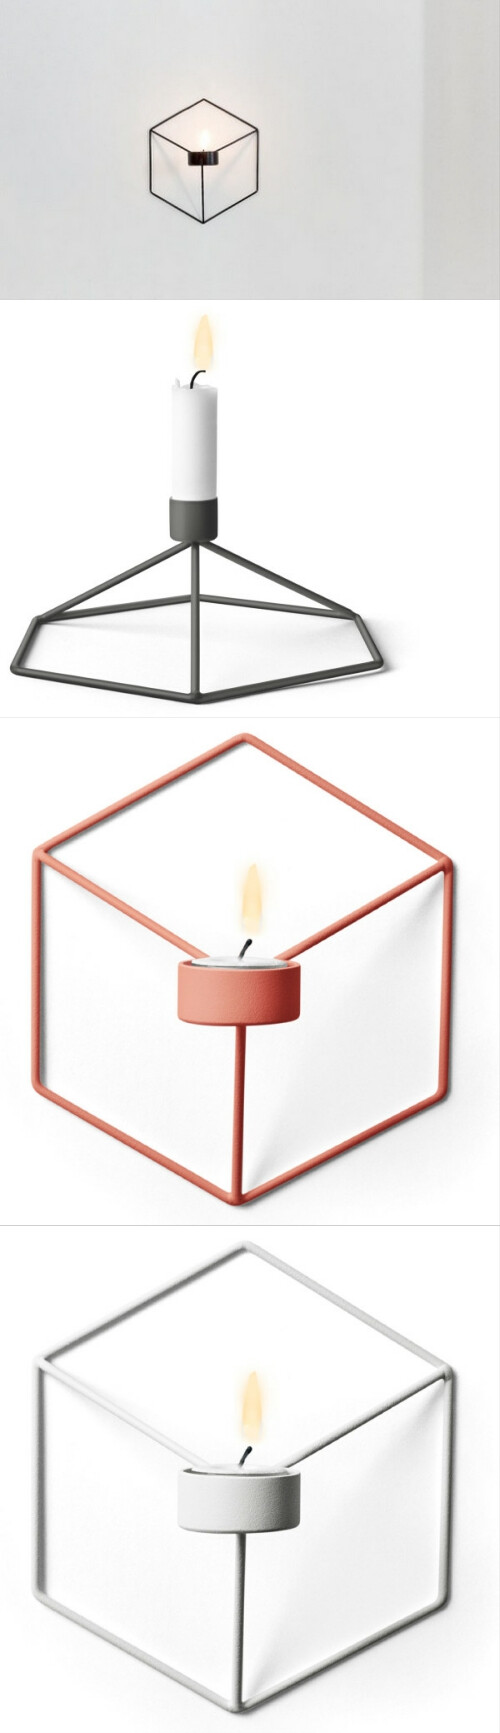 来自瑞典斯德哥尔摩的Note设计工作室设计了一对儿名为「观点（Point of View）」的立方体烛台，正如其名字所暗示的那样，观察视角不同，你看到的效果也不相同。